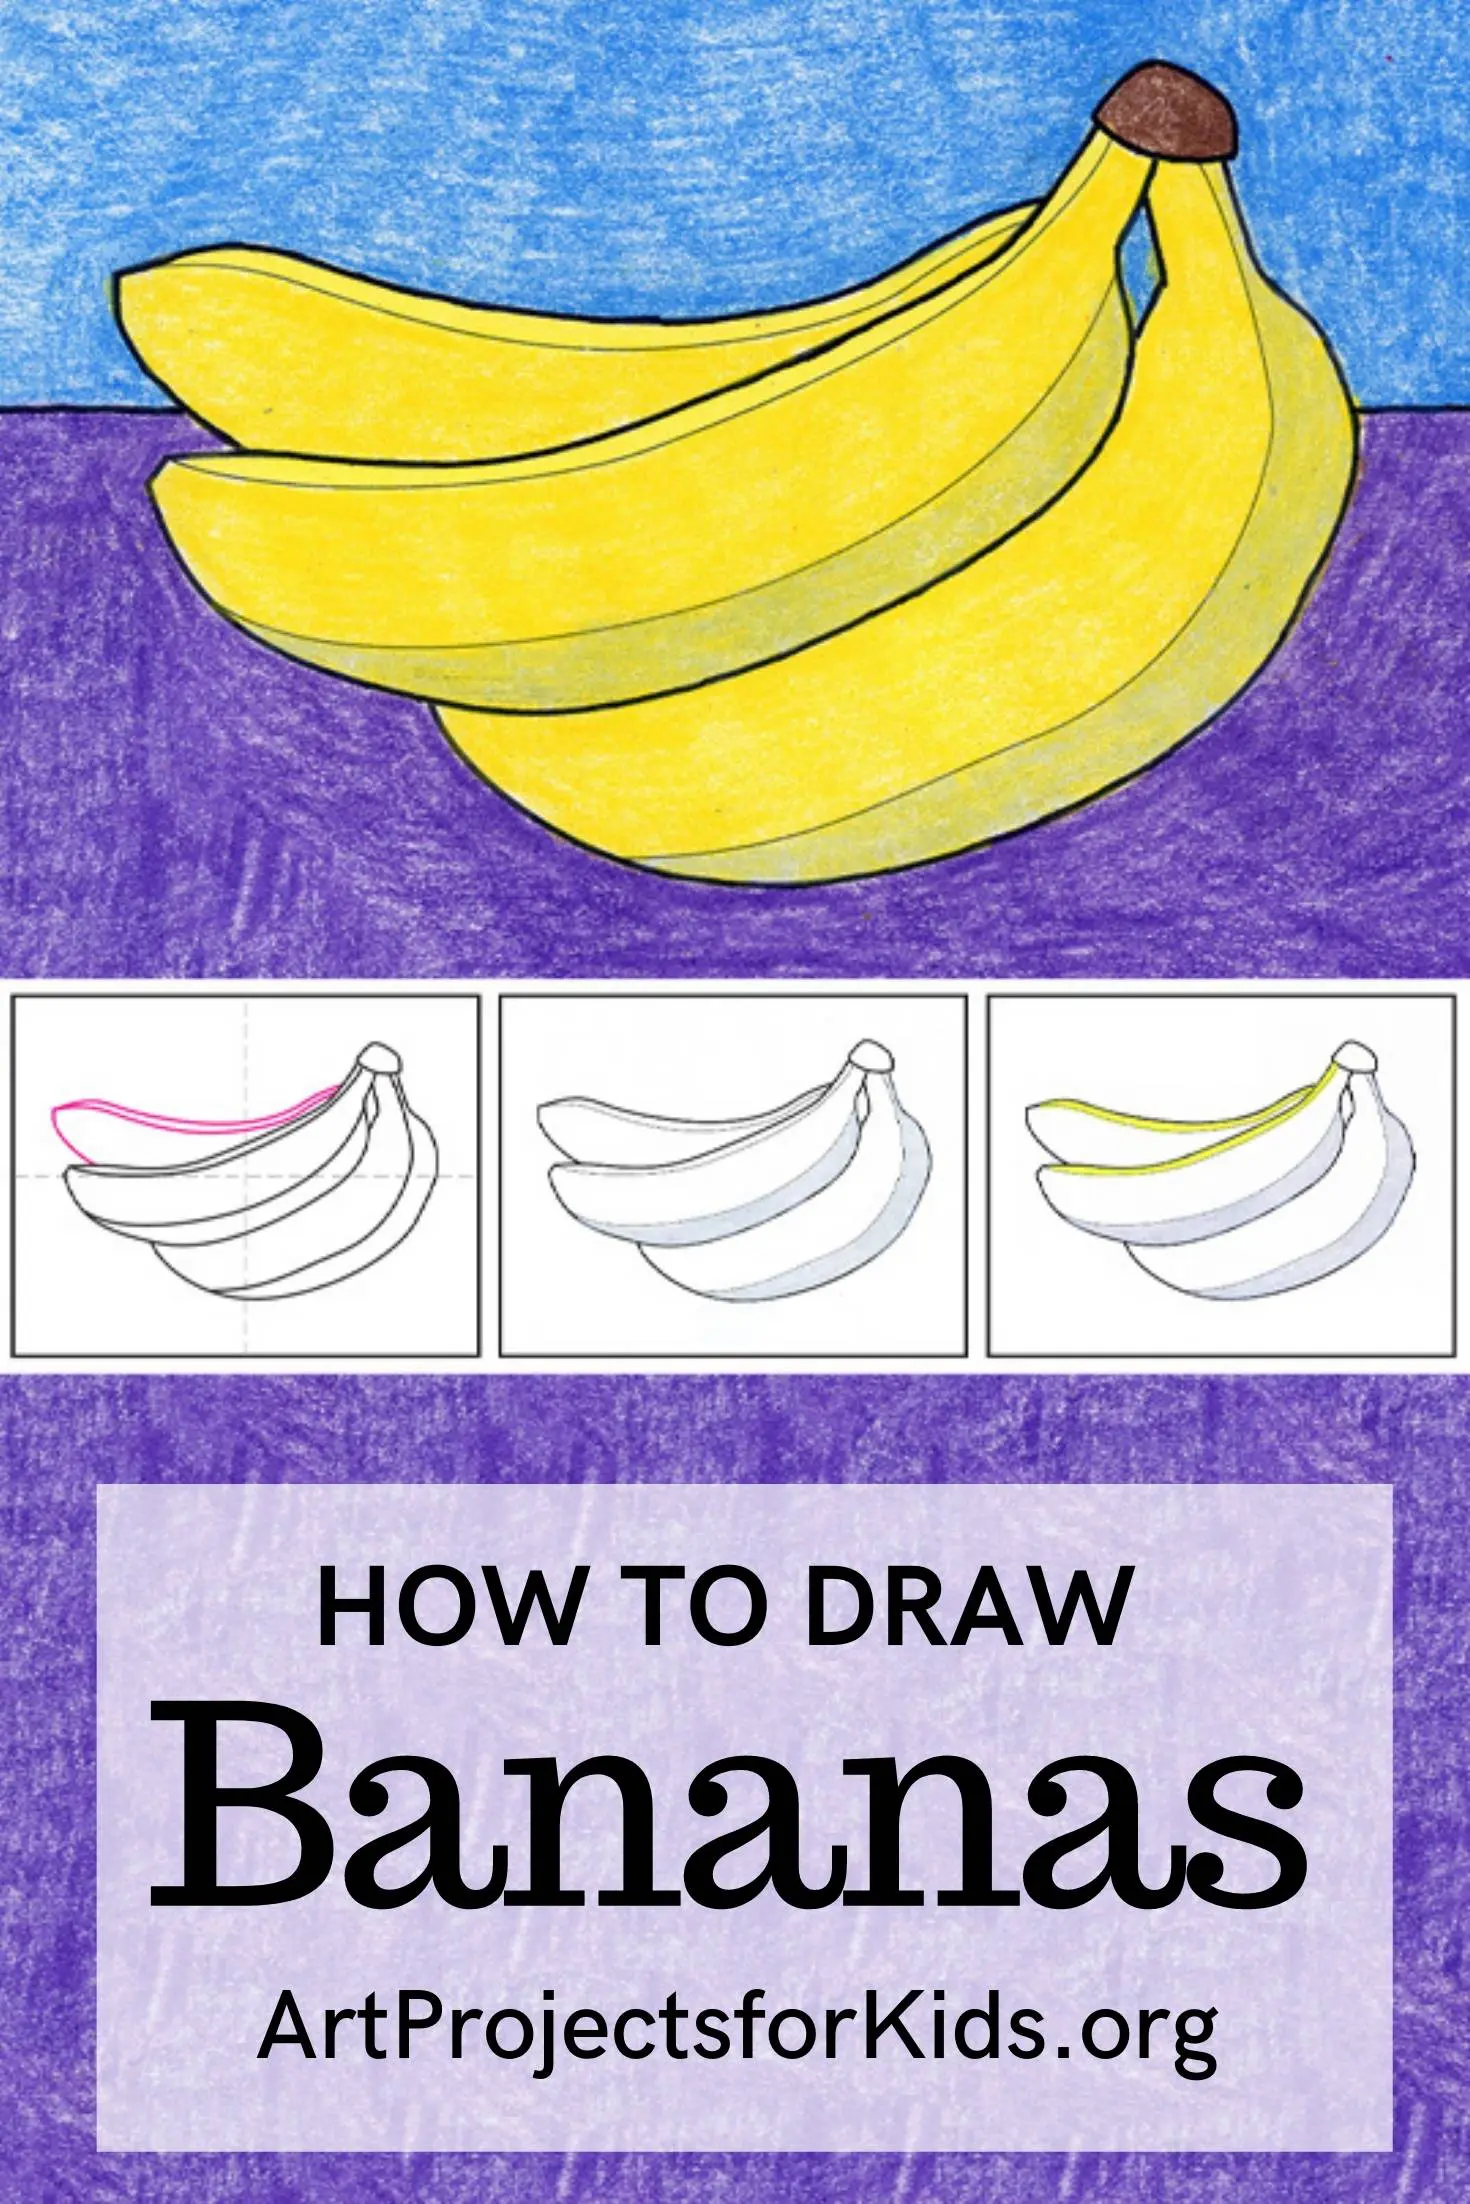 Banana for Pinterest.jpeg